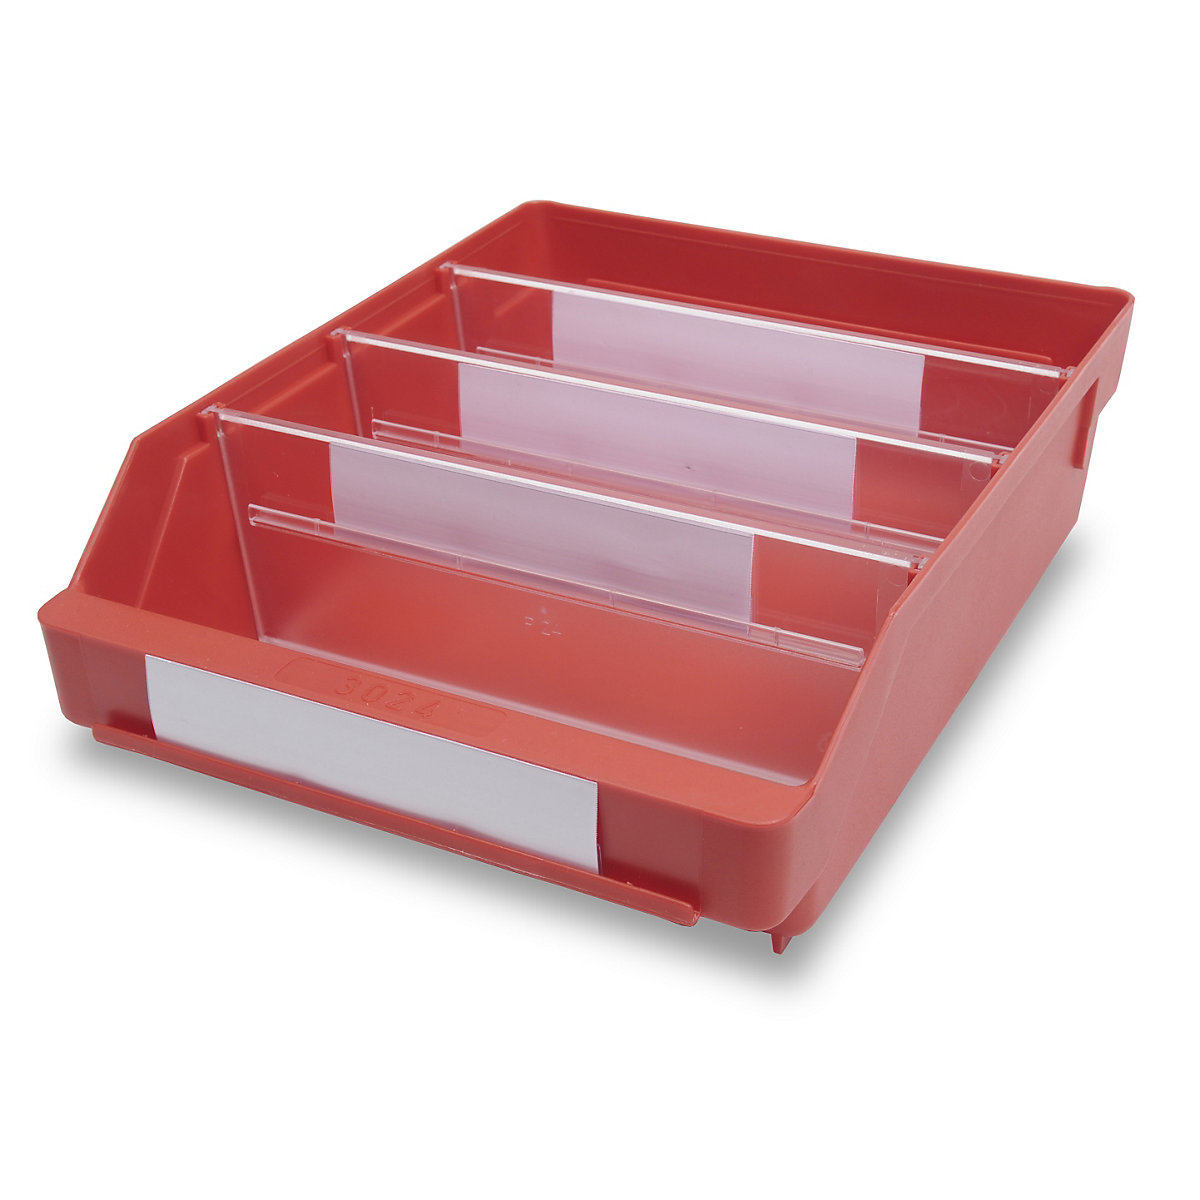 STEMO Regalkasten aus hochschlagfestem Polypropylen, rot, LxBxH 300 x 240 x 95 mm, VE 15 Stk